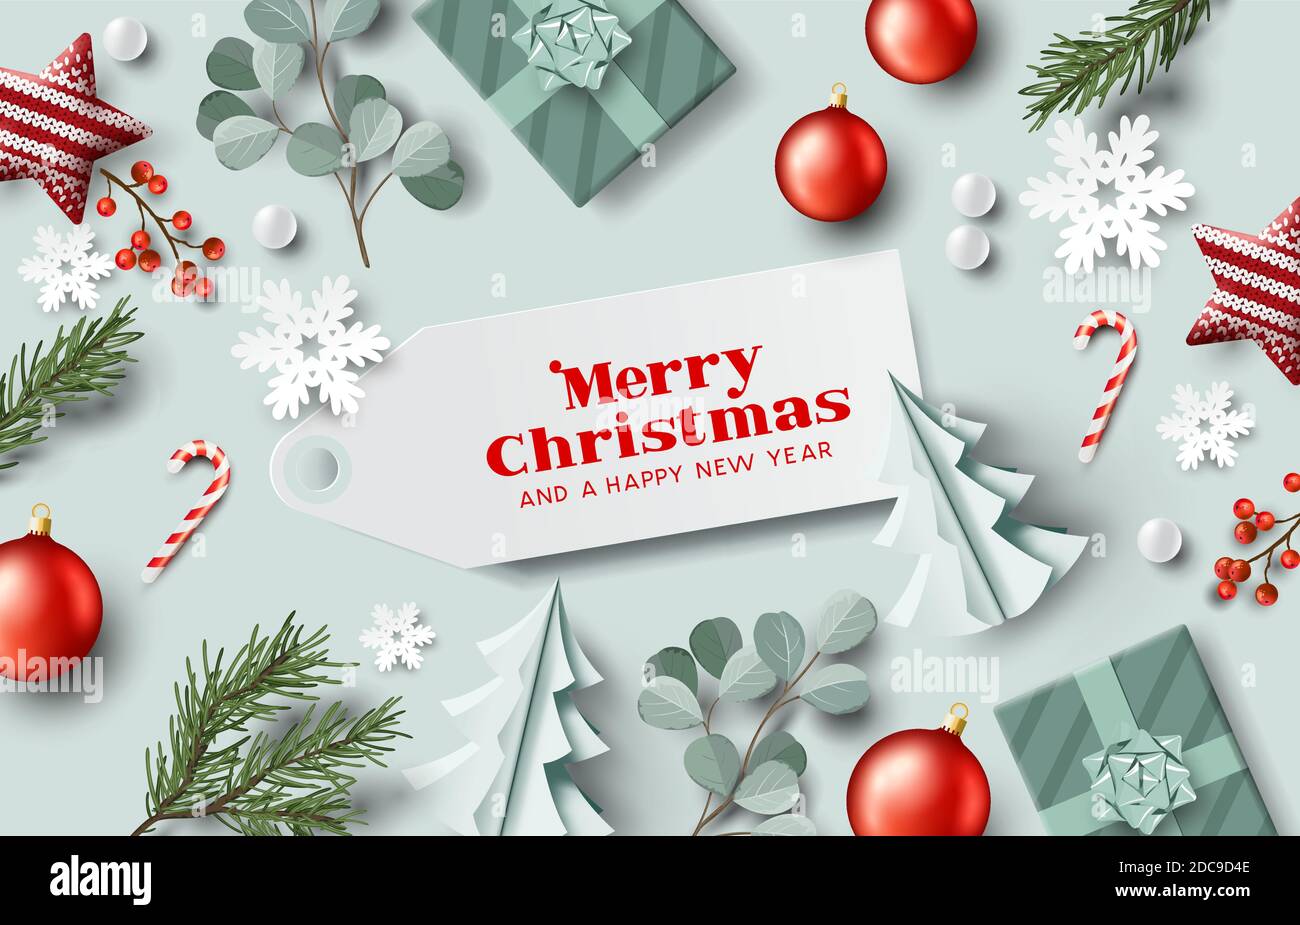 Weihnachtsbaum Dekorationen, eingewickelte Geschenke und Winterpflanzen festlichen Hintergrund Layout mit einer fröhlichen Weihnachtsbotschaft. Vektorgrafik Stock Vektor